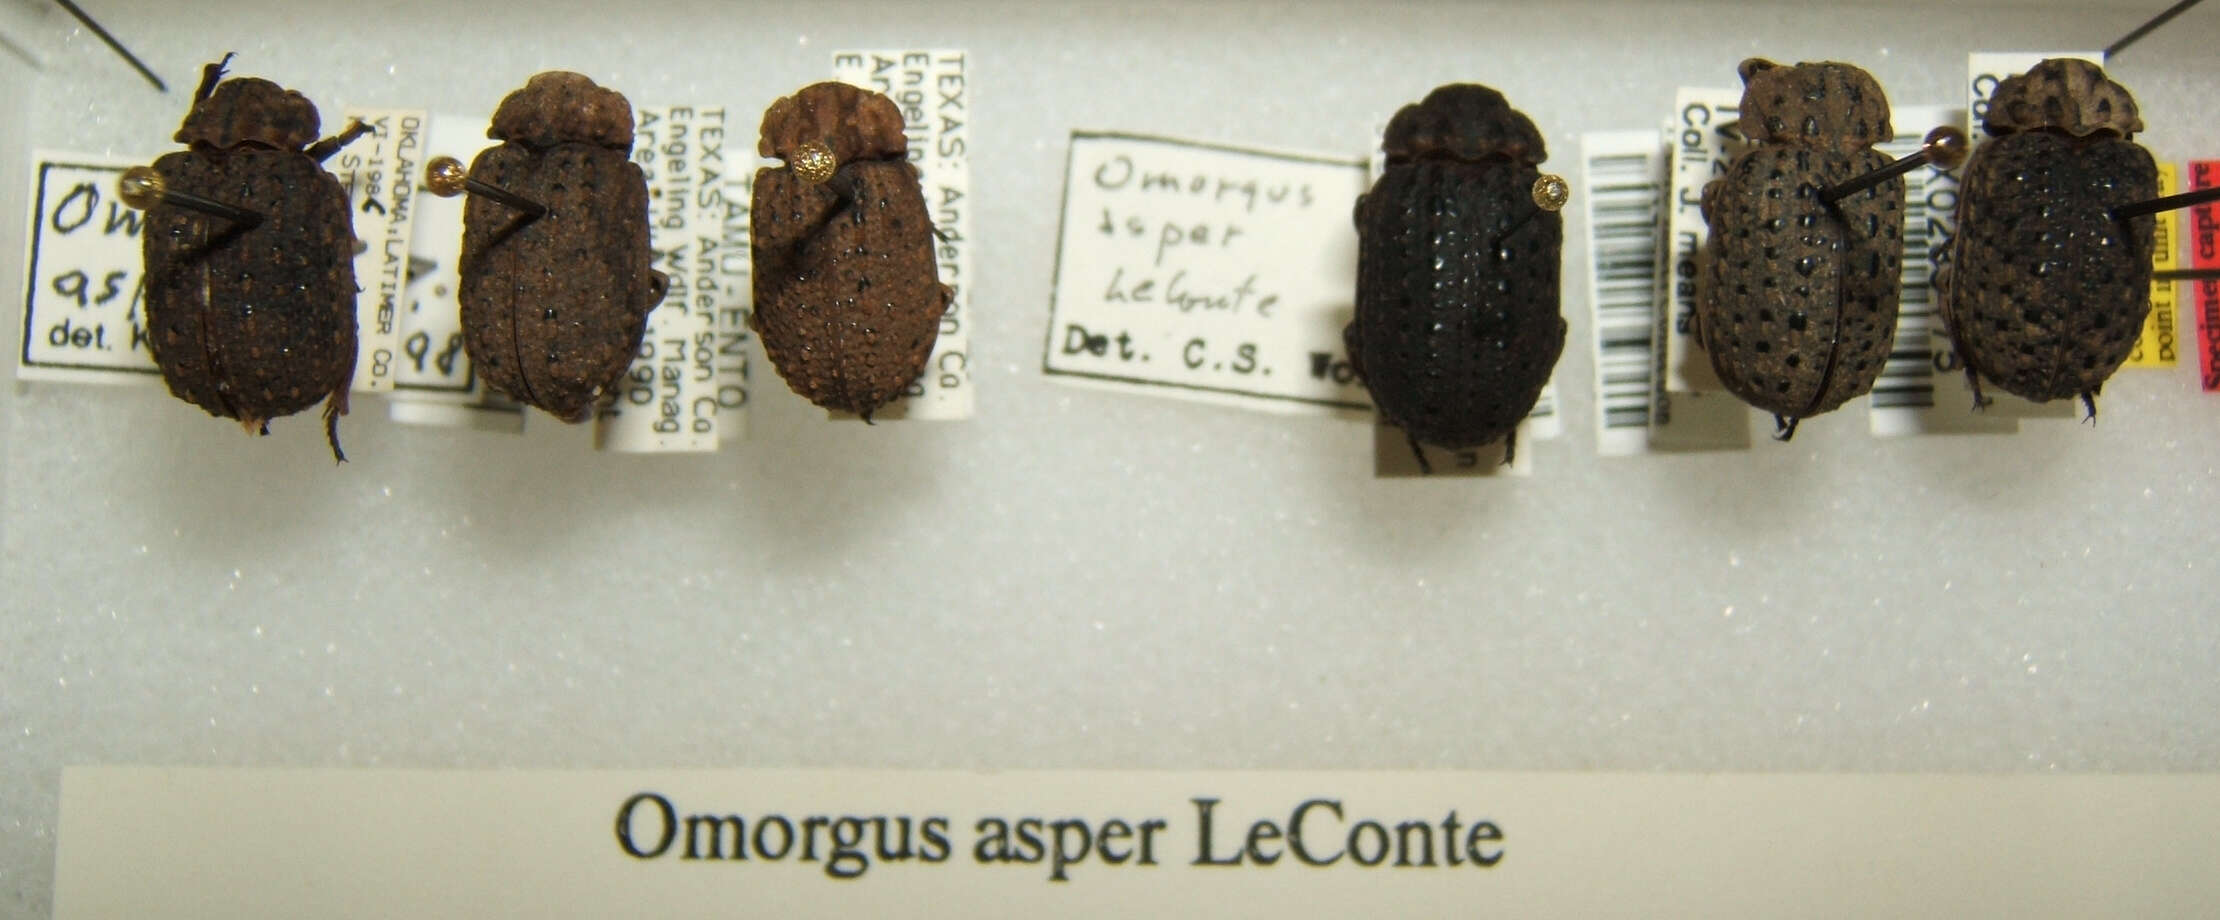 Image of Omorgus (Omorgus) asper Le Conte 1854